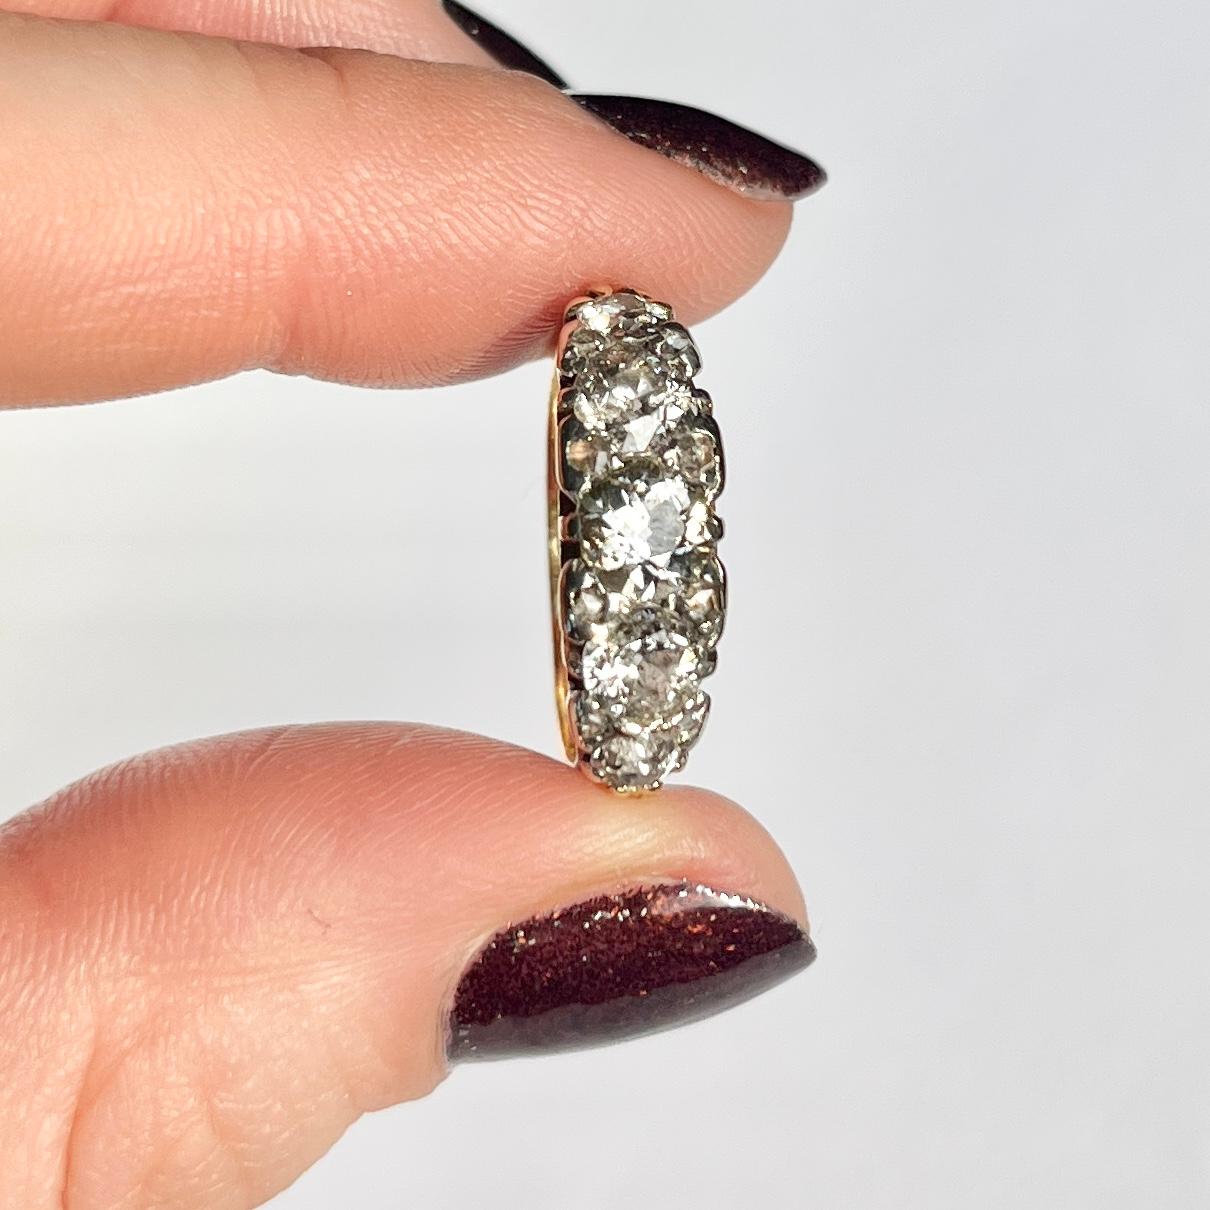 Fünf glitzernde Diamanten sitzen fabelhaft in einer dekorativen, aus 18-karätigem Gold gefertigten Schneckenfassung. Der mittlere Stein misst 50 Pence, die nächstgrößeren jeweils 35 Pence und die kleinsten Steine jeweils 10 Pence. Auf beiden Seiten